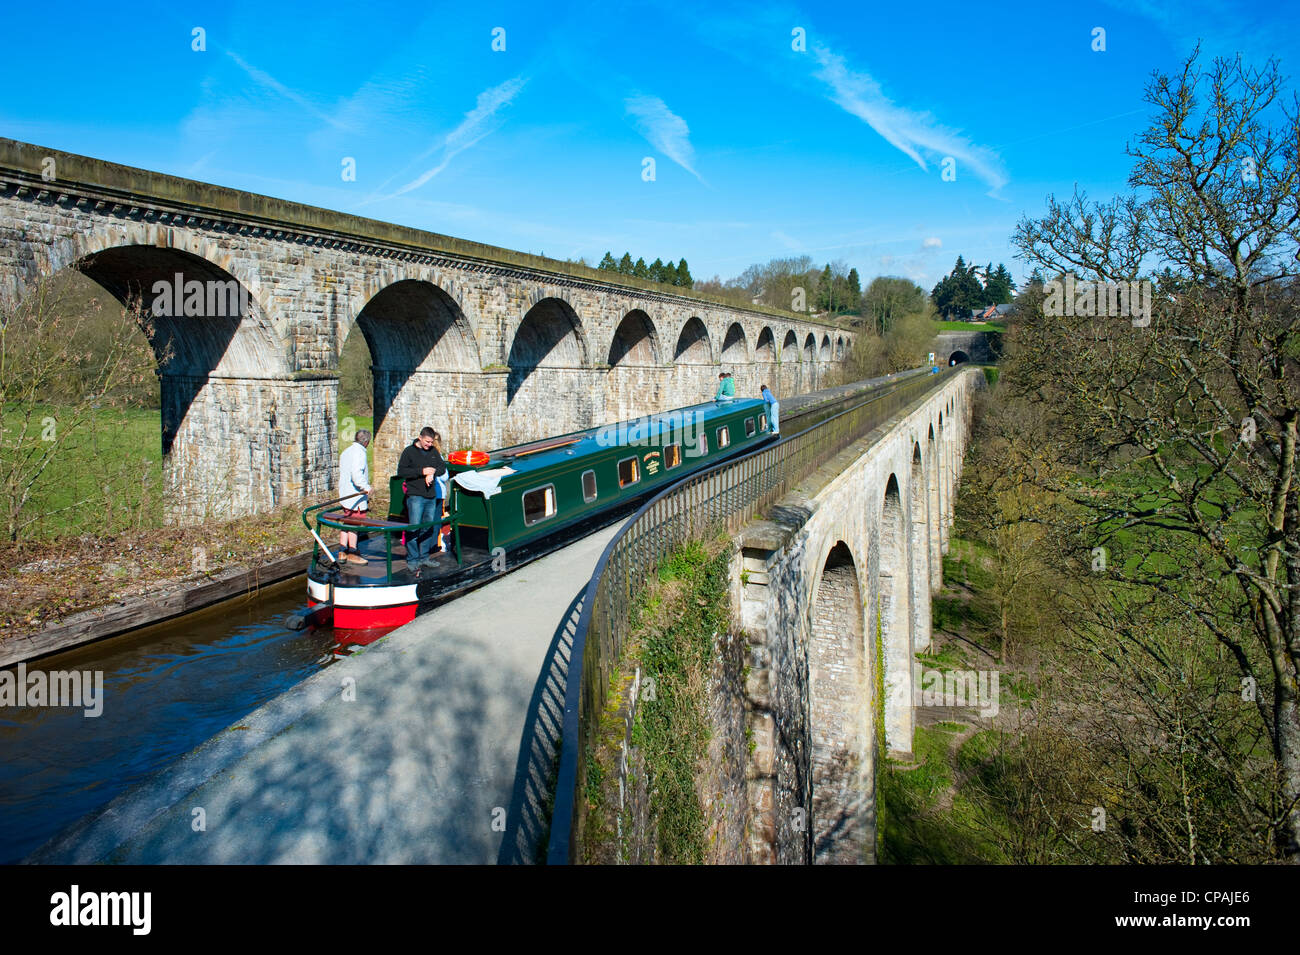 Bateaux sur l'étroit passage de l'aqueduc du canal de Llangollen Chirk, Pays de Galles, Royaume-Uni Banque D'Images